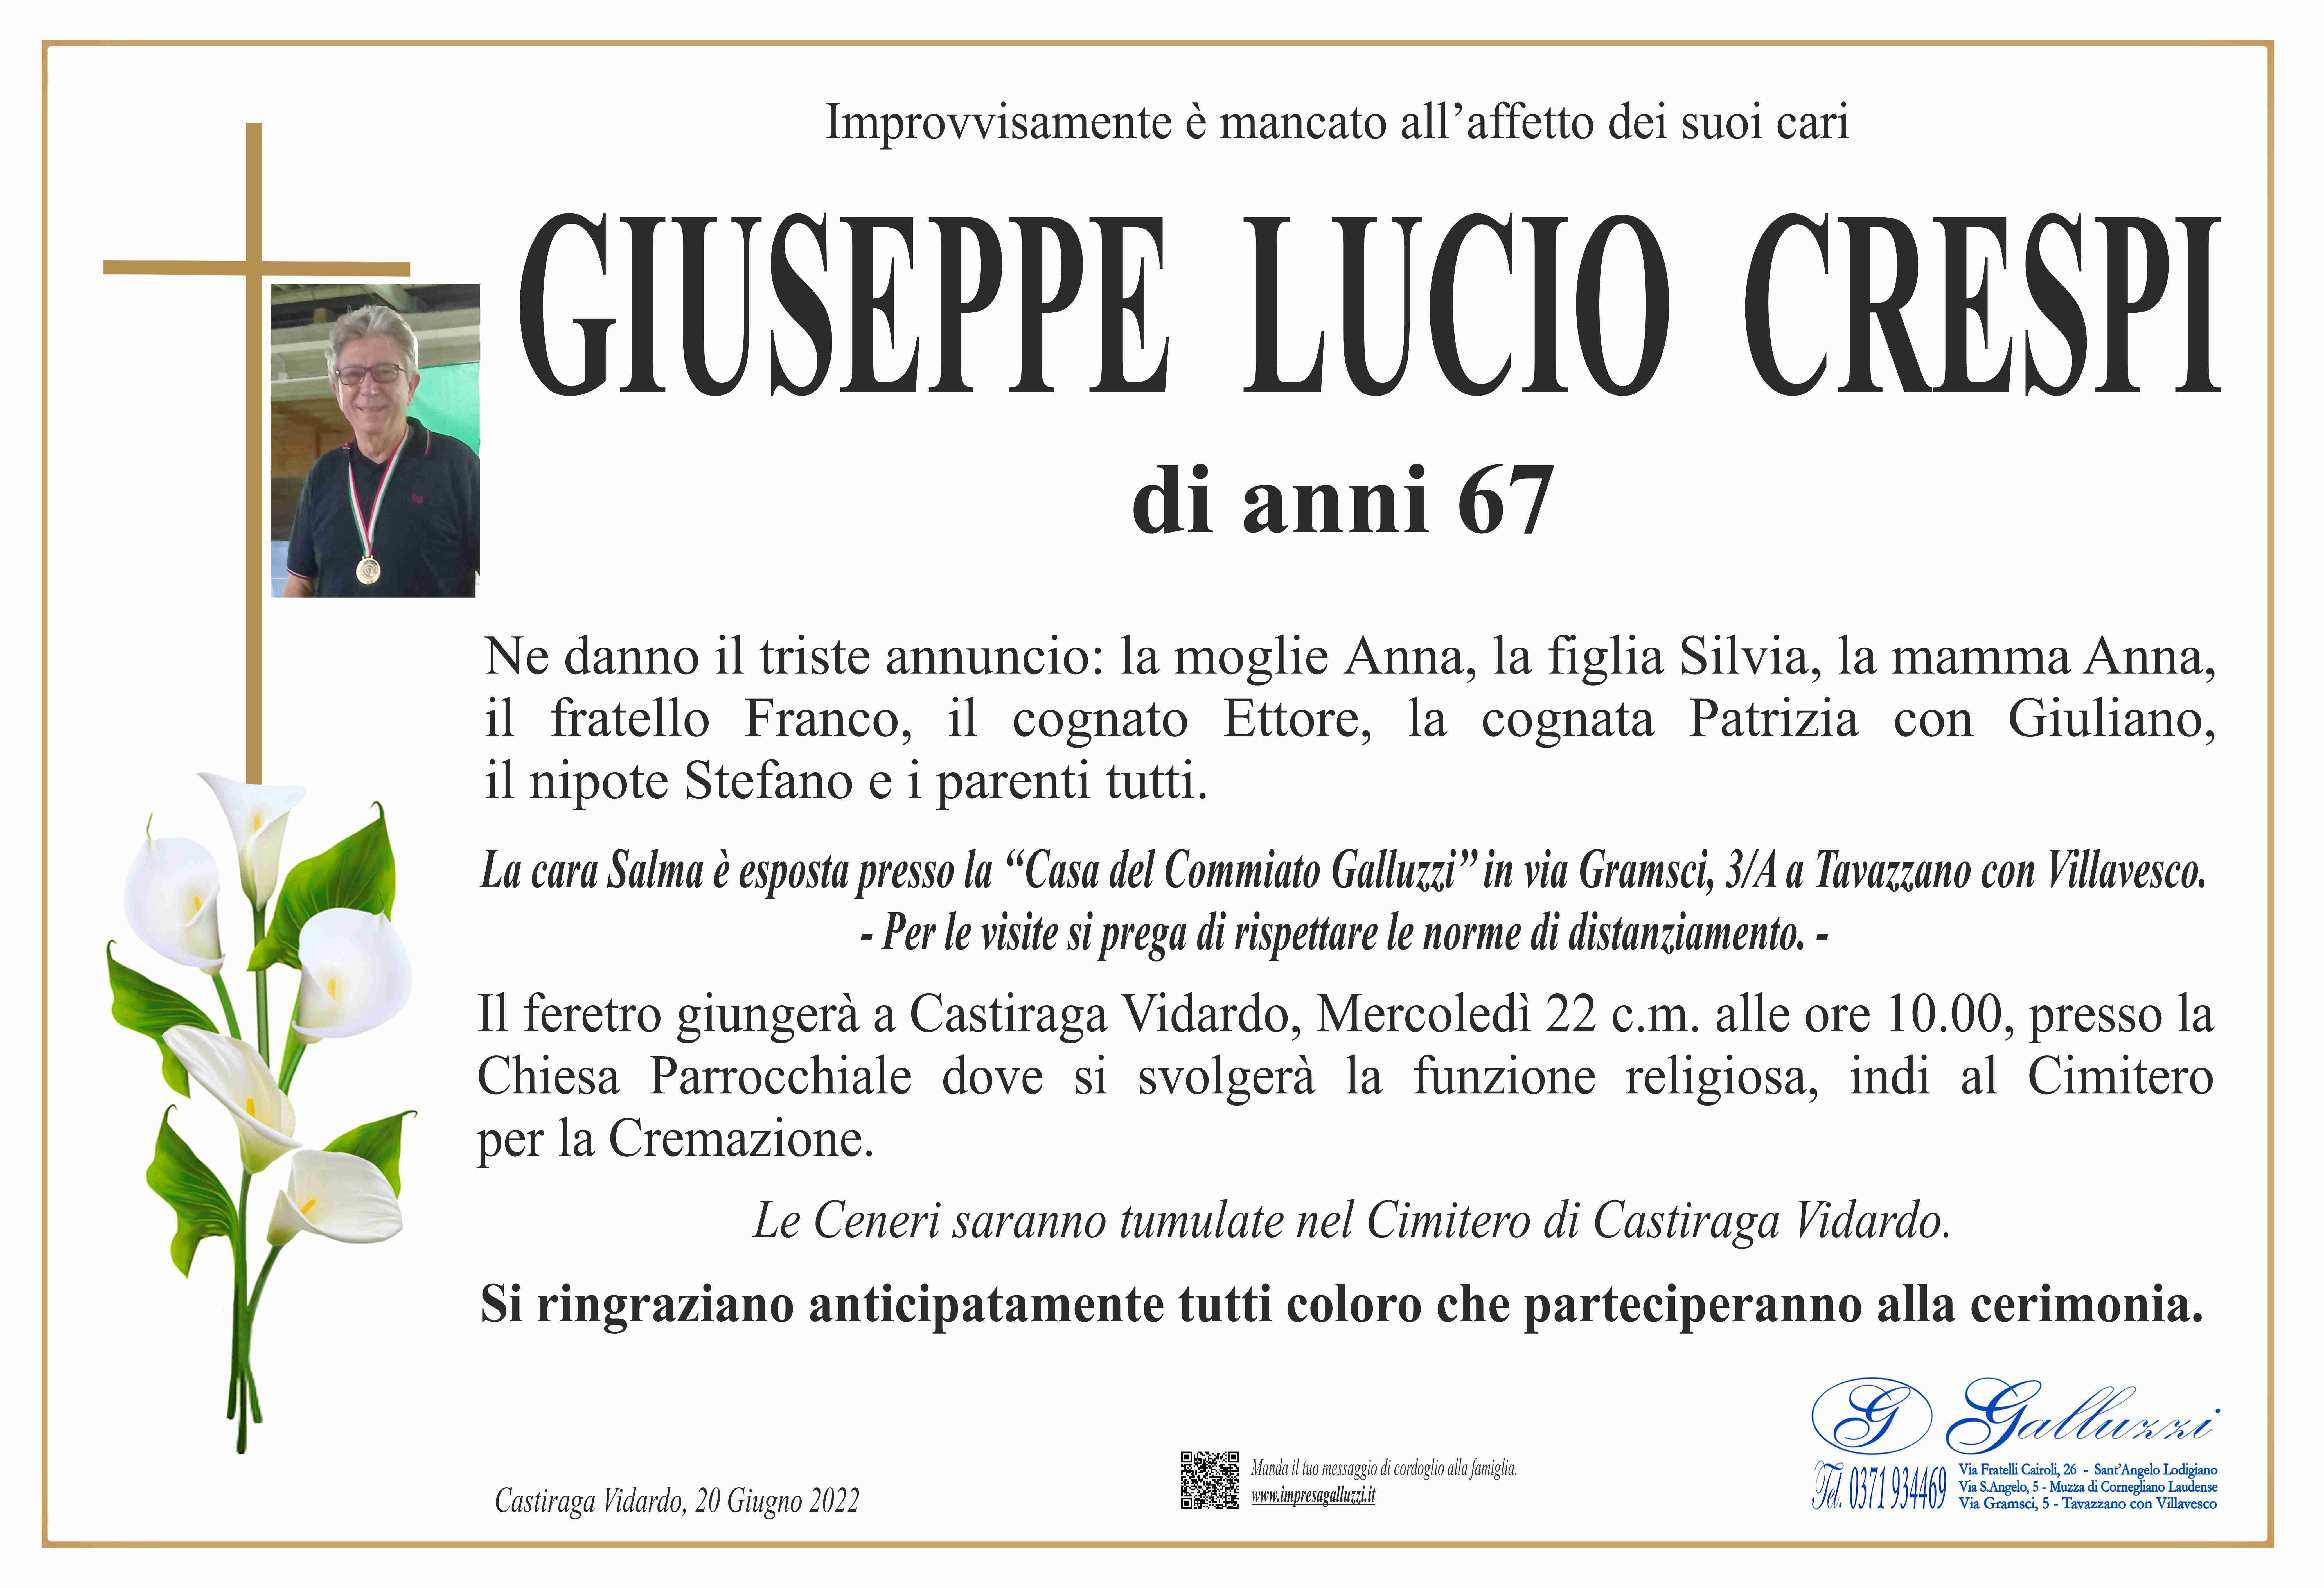 Giuseppe Lucio Crespi